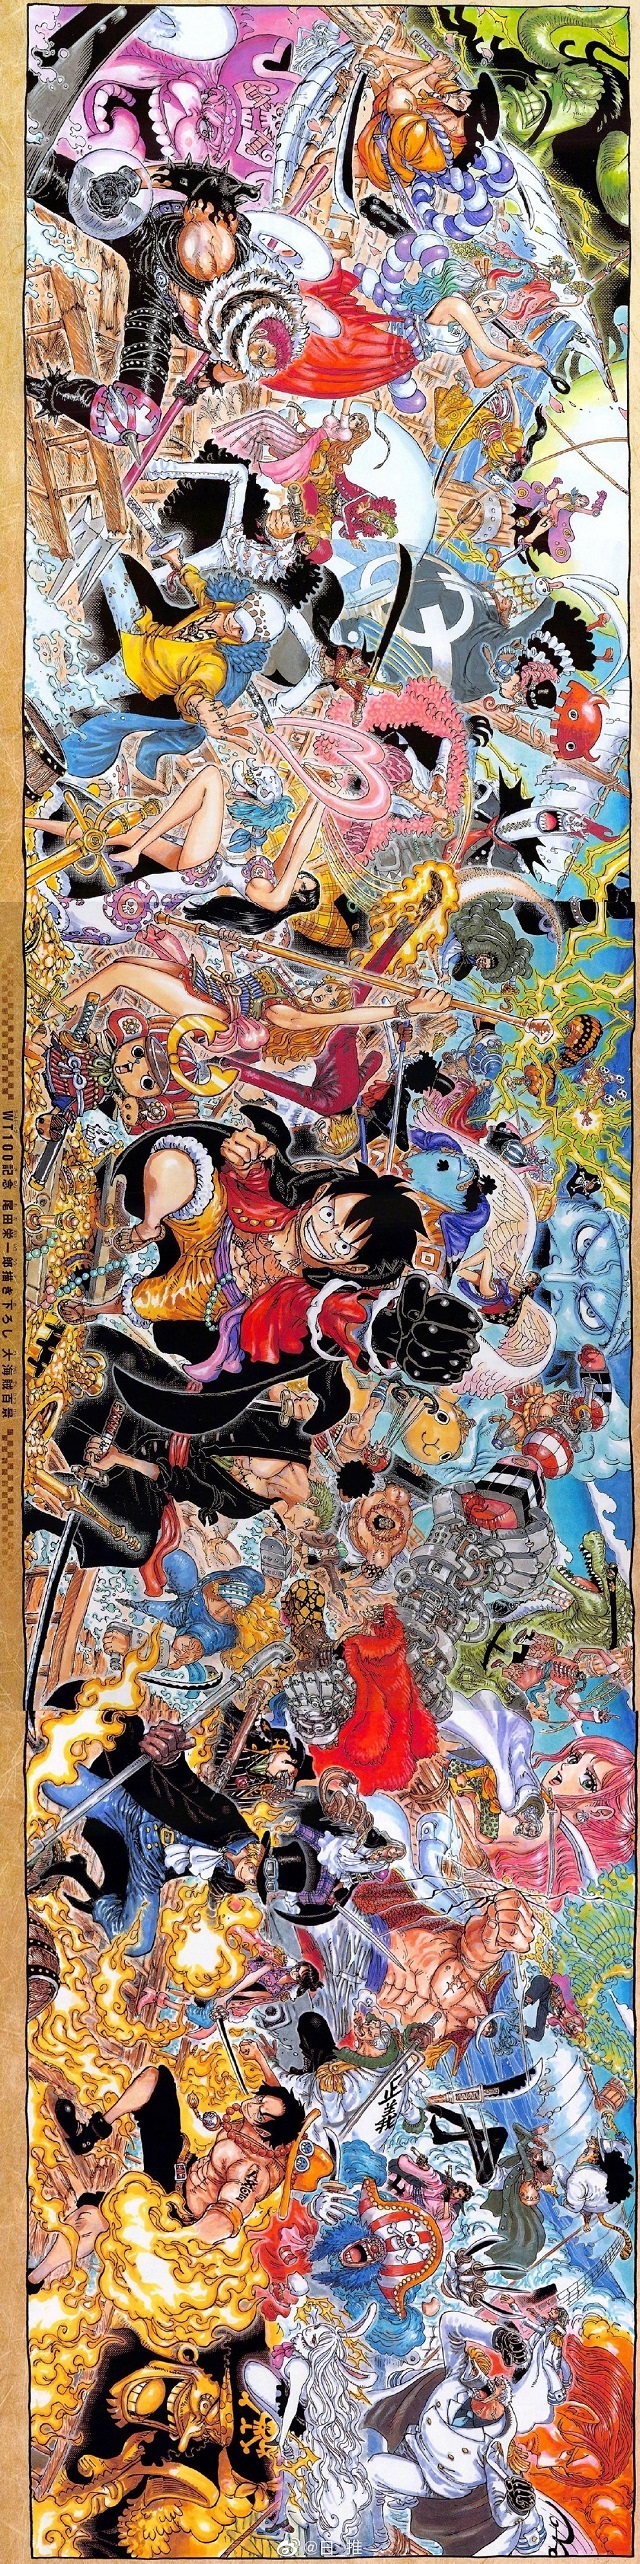 尾田荣一郎绘制「海贼王」100卷纪念巨幅海报公开